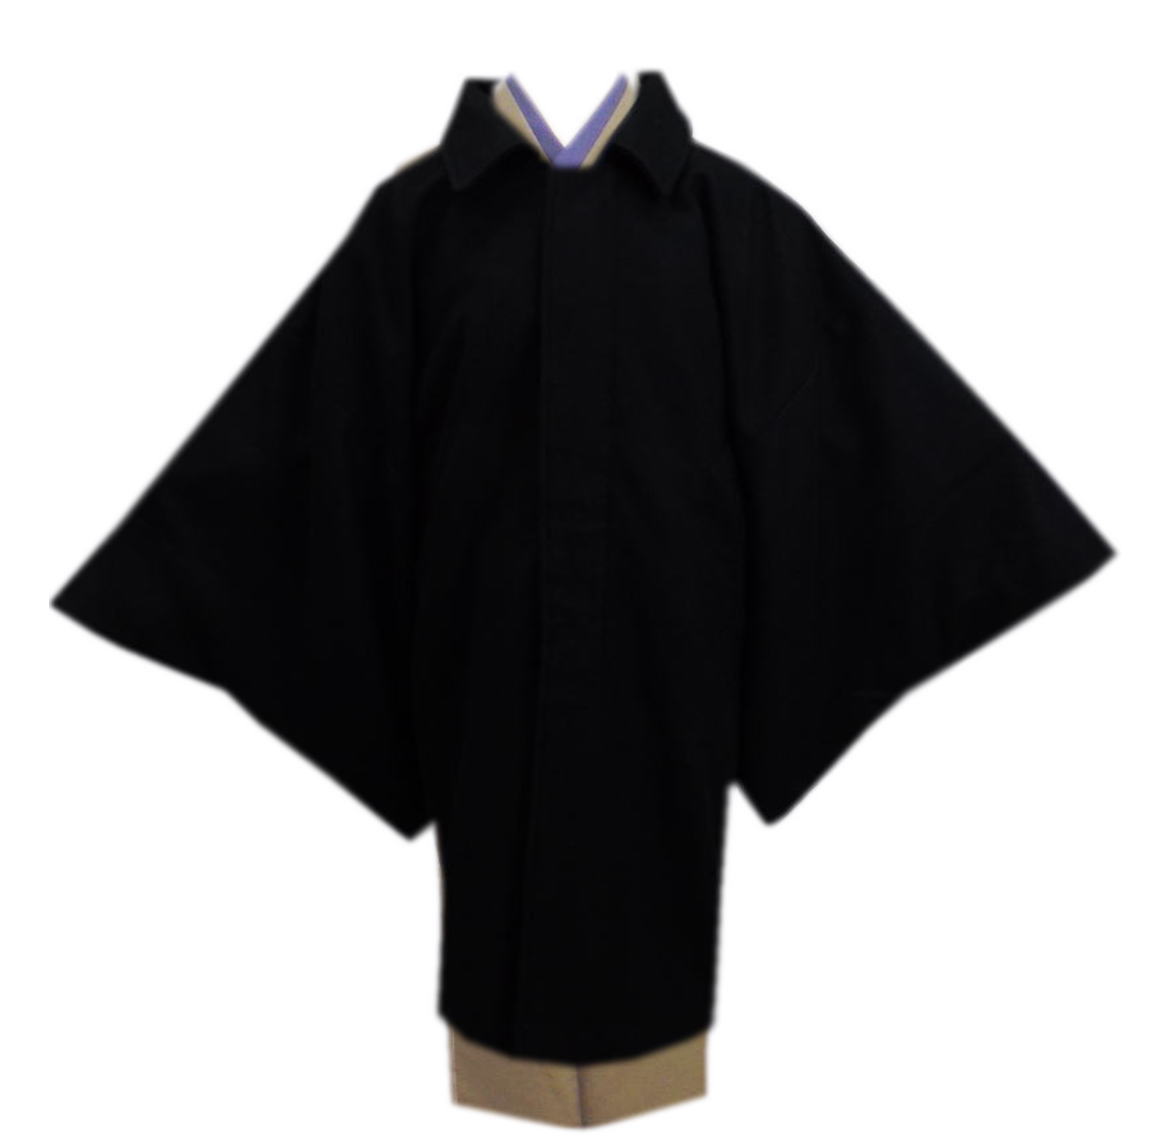 コート 和装 着物 メンズ 男性 ウール混 角袖 黒色 M L LL 冬用 無地 男物 紳士用 大きいサイズ 2L 1